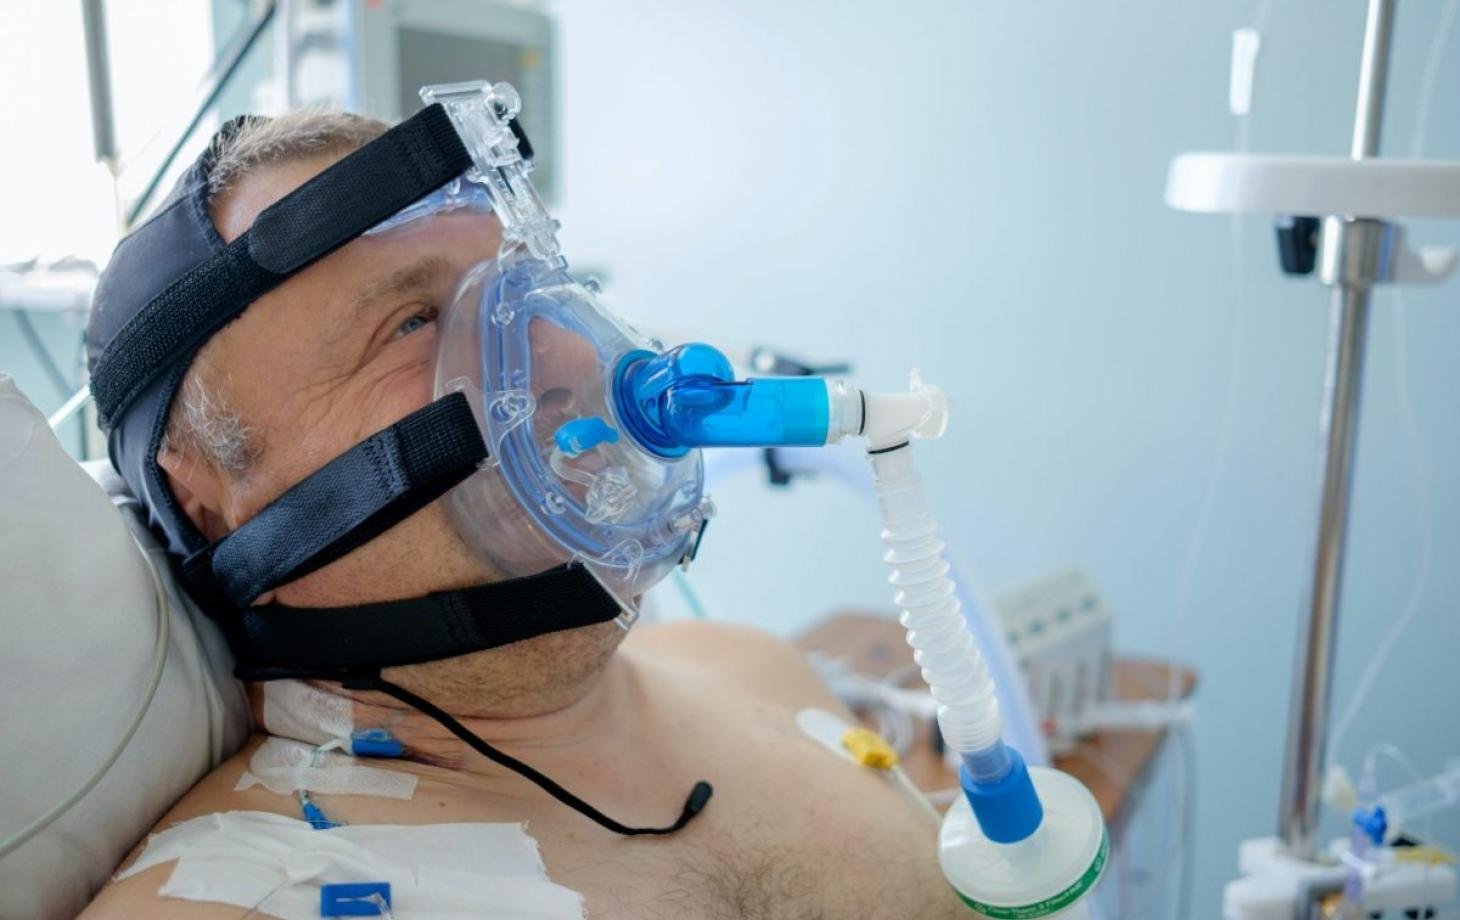  În medie, un pacient Covid are nevoie pentru tratament de o tonă de oxigen pe lună